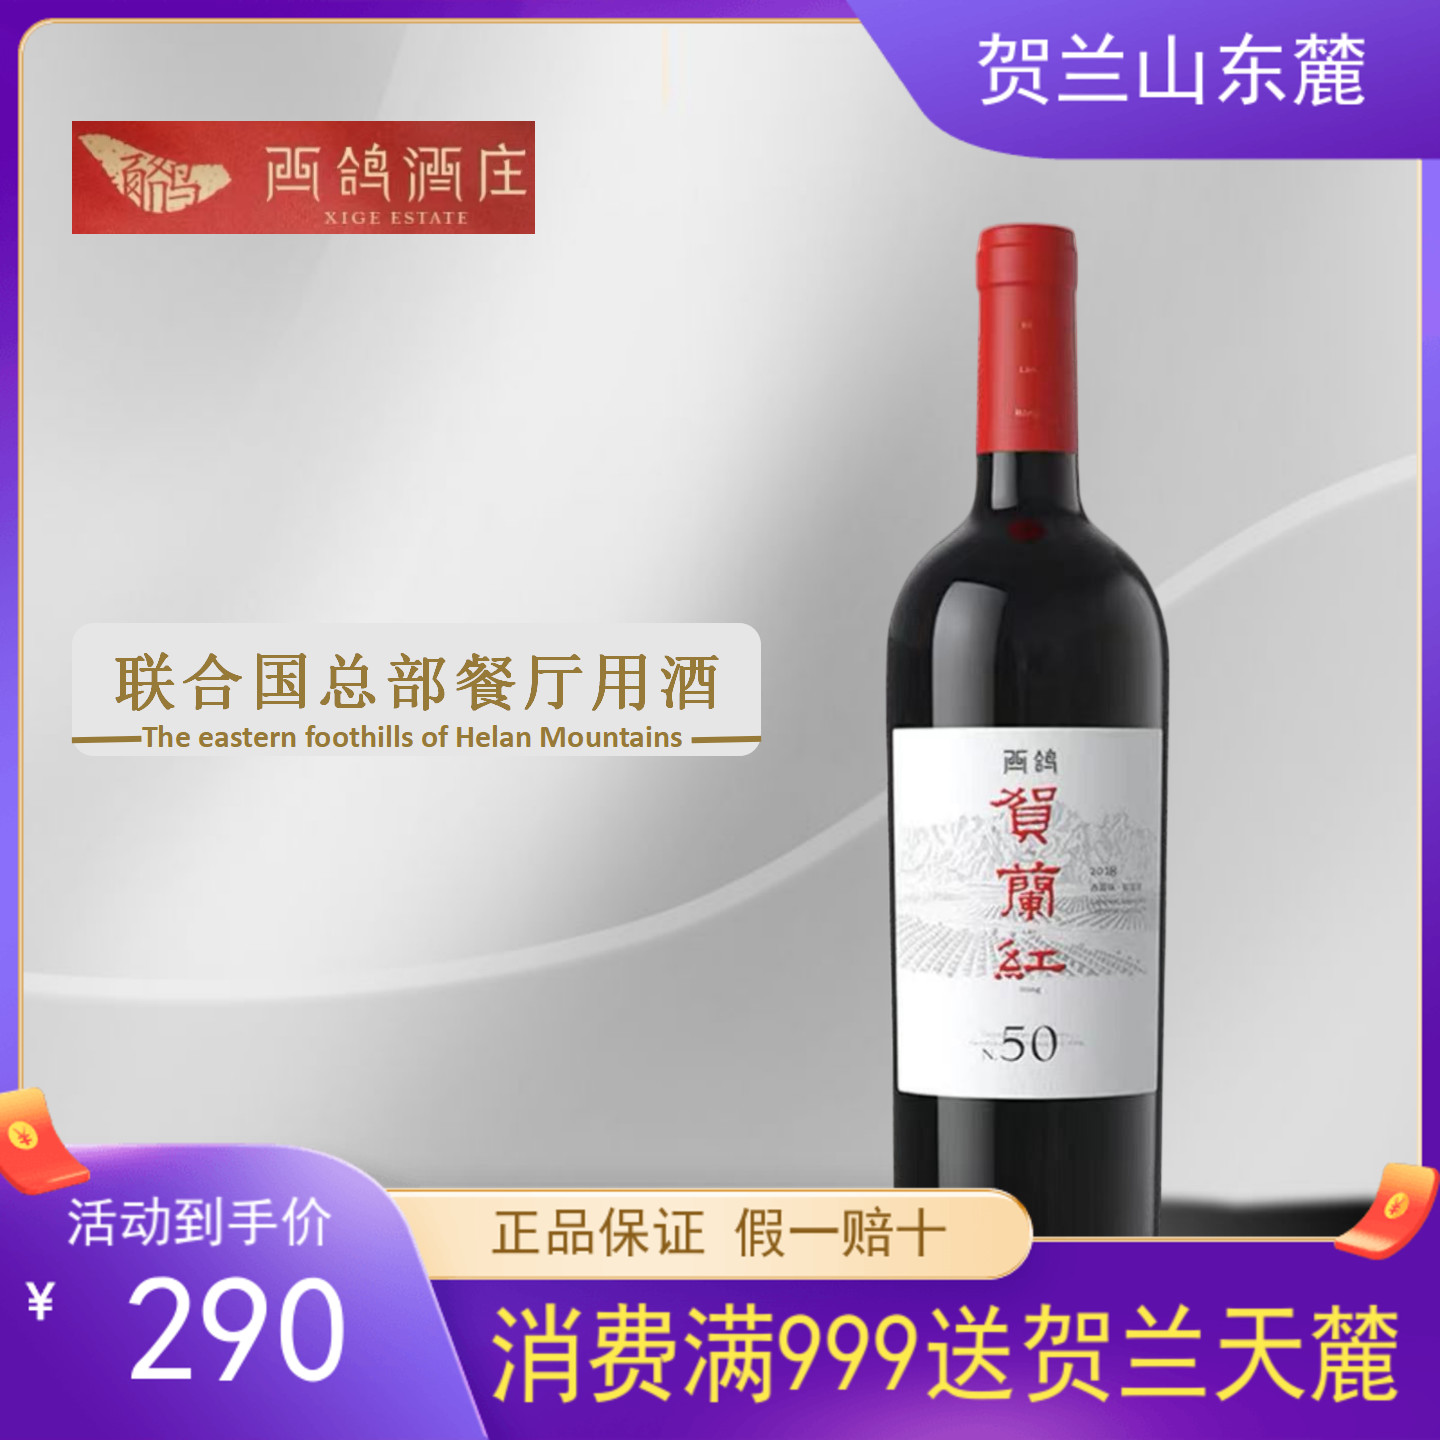 【贺兰红N50】西鸽酒庄17年贺兰红N50赤霞珠蛇龙珠混酿葡萄酒